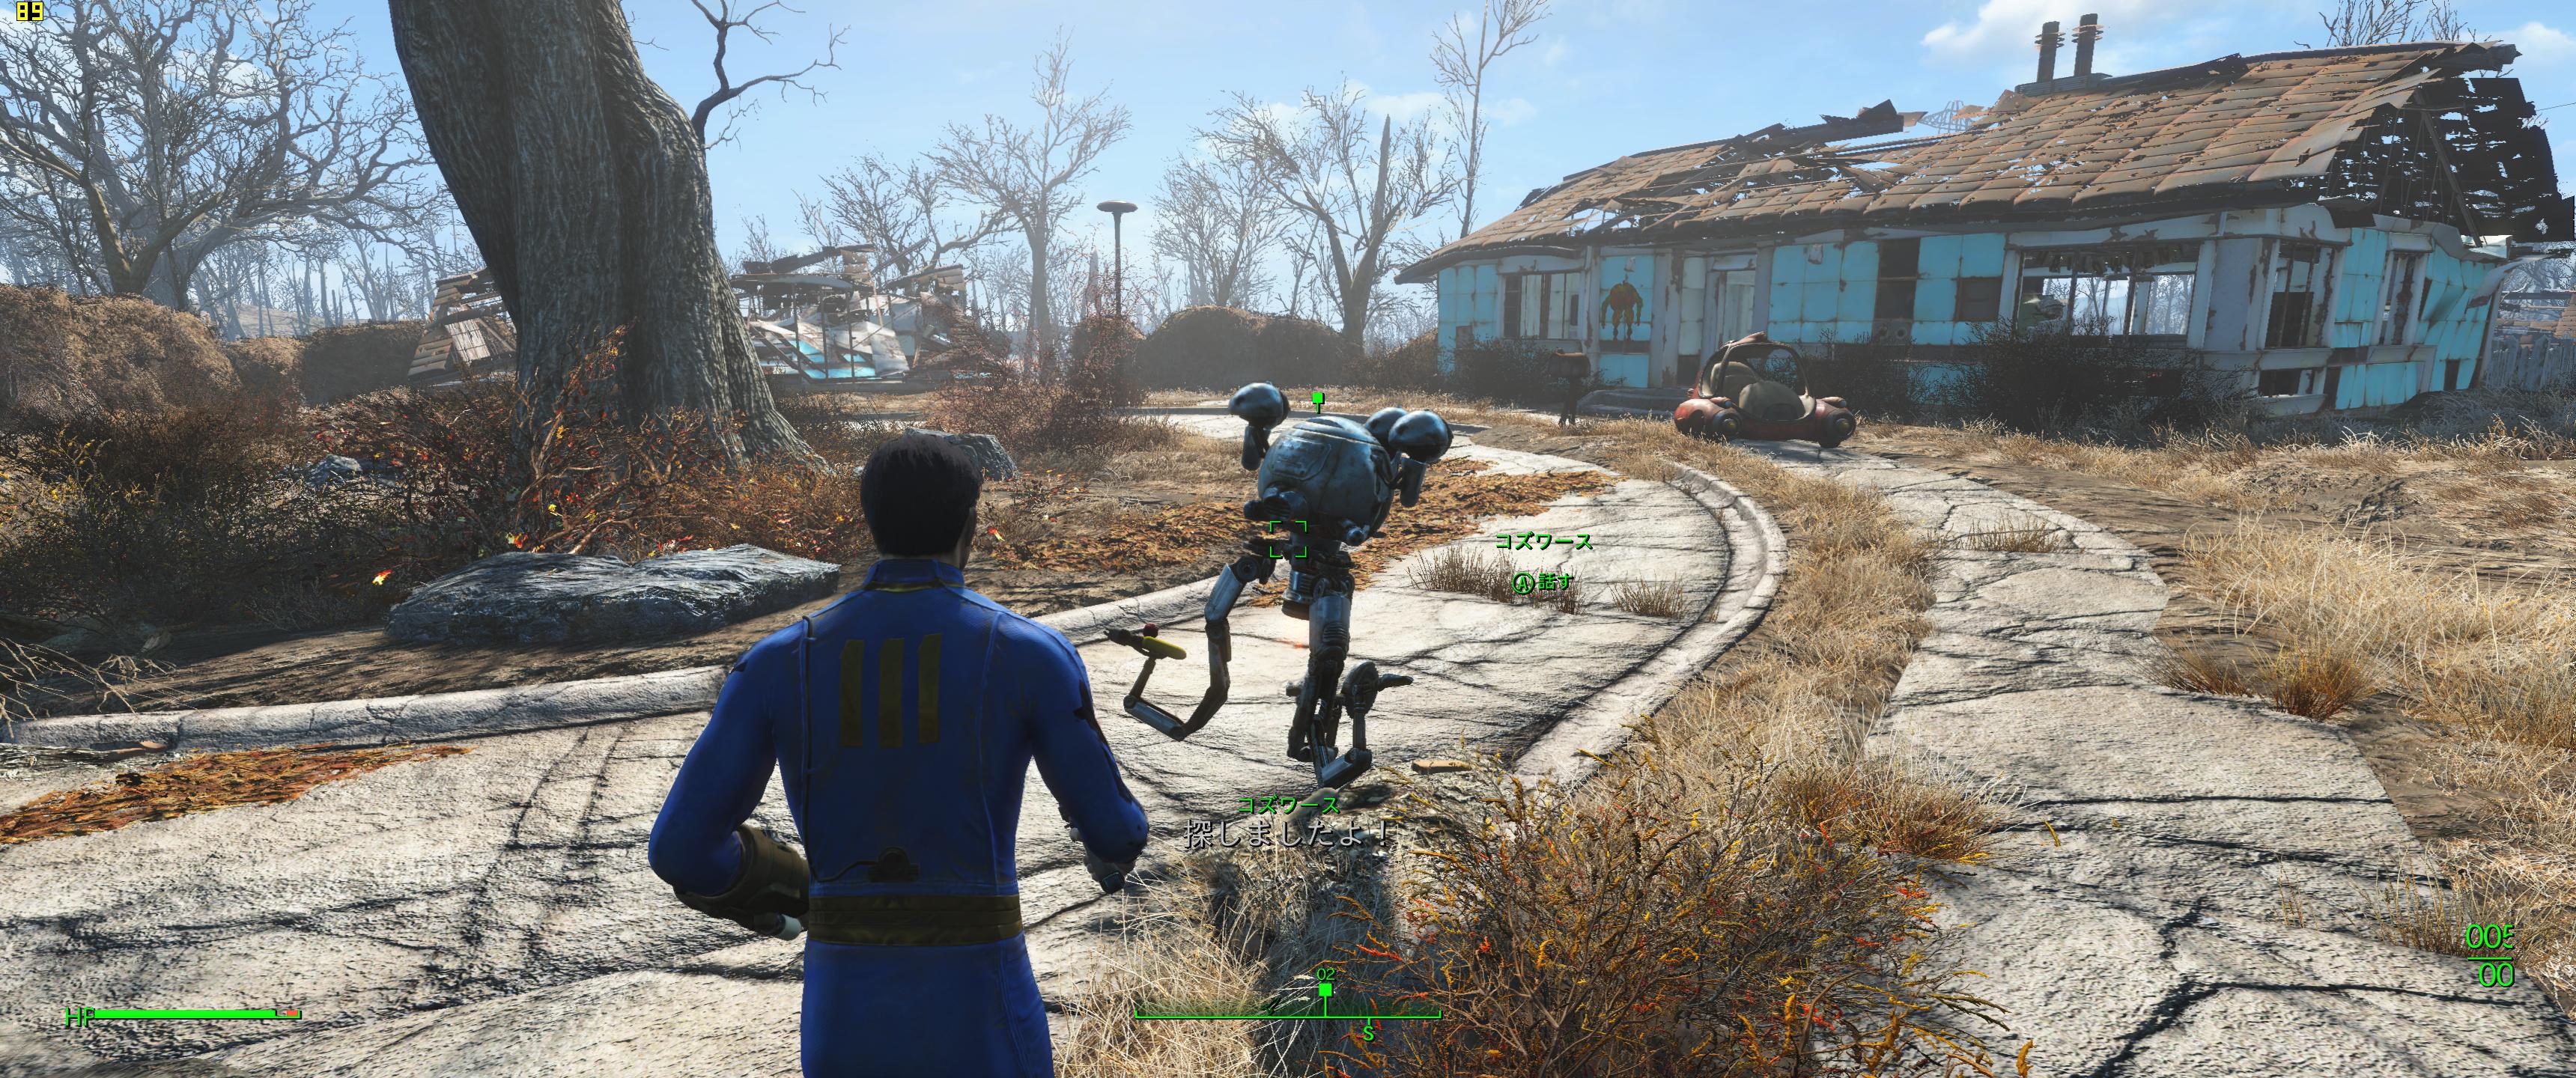 Fallout 4 Pc版で21 9解像度のインターフェース表示を正常にするmod Widescreen Fix の使い方 自作とゲームと趣味の日々